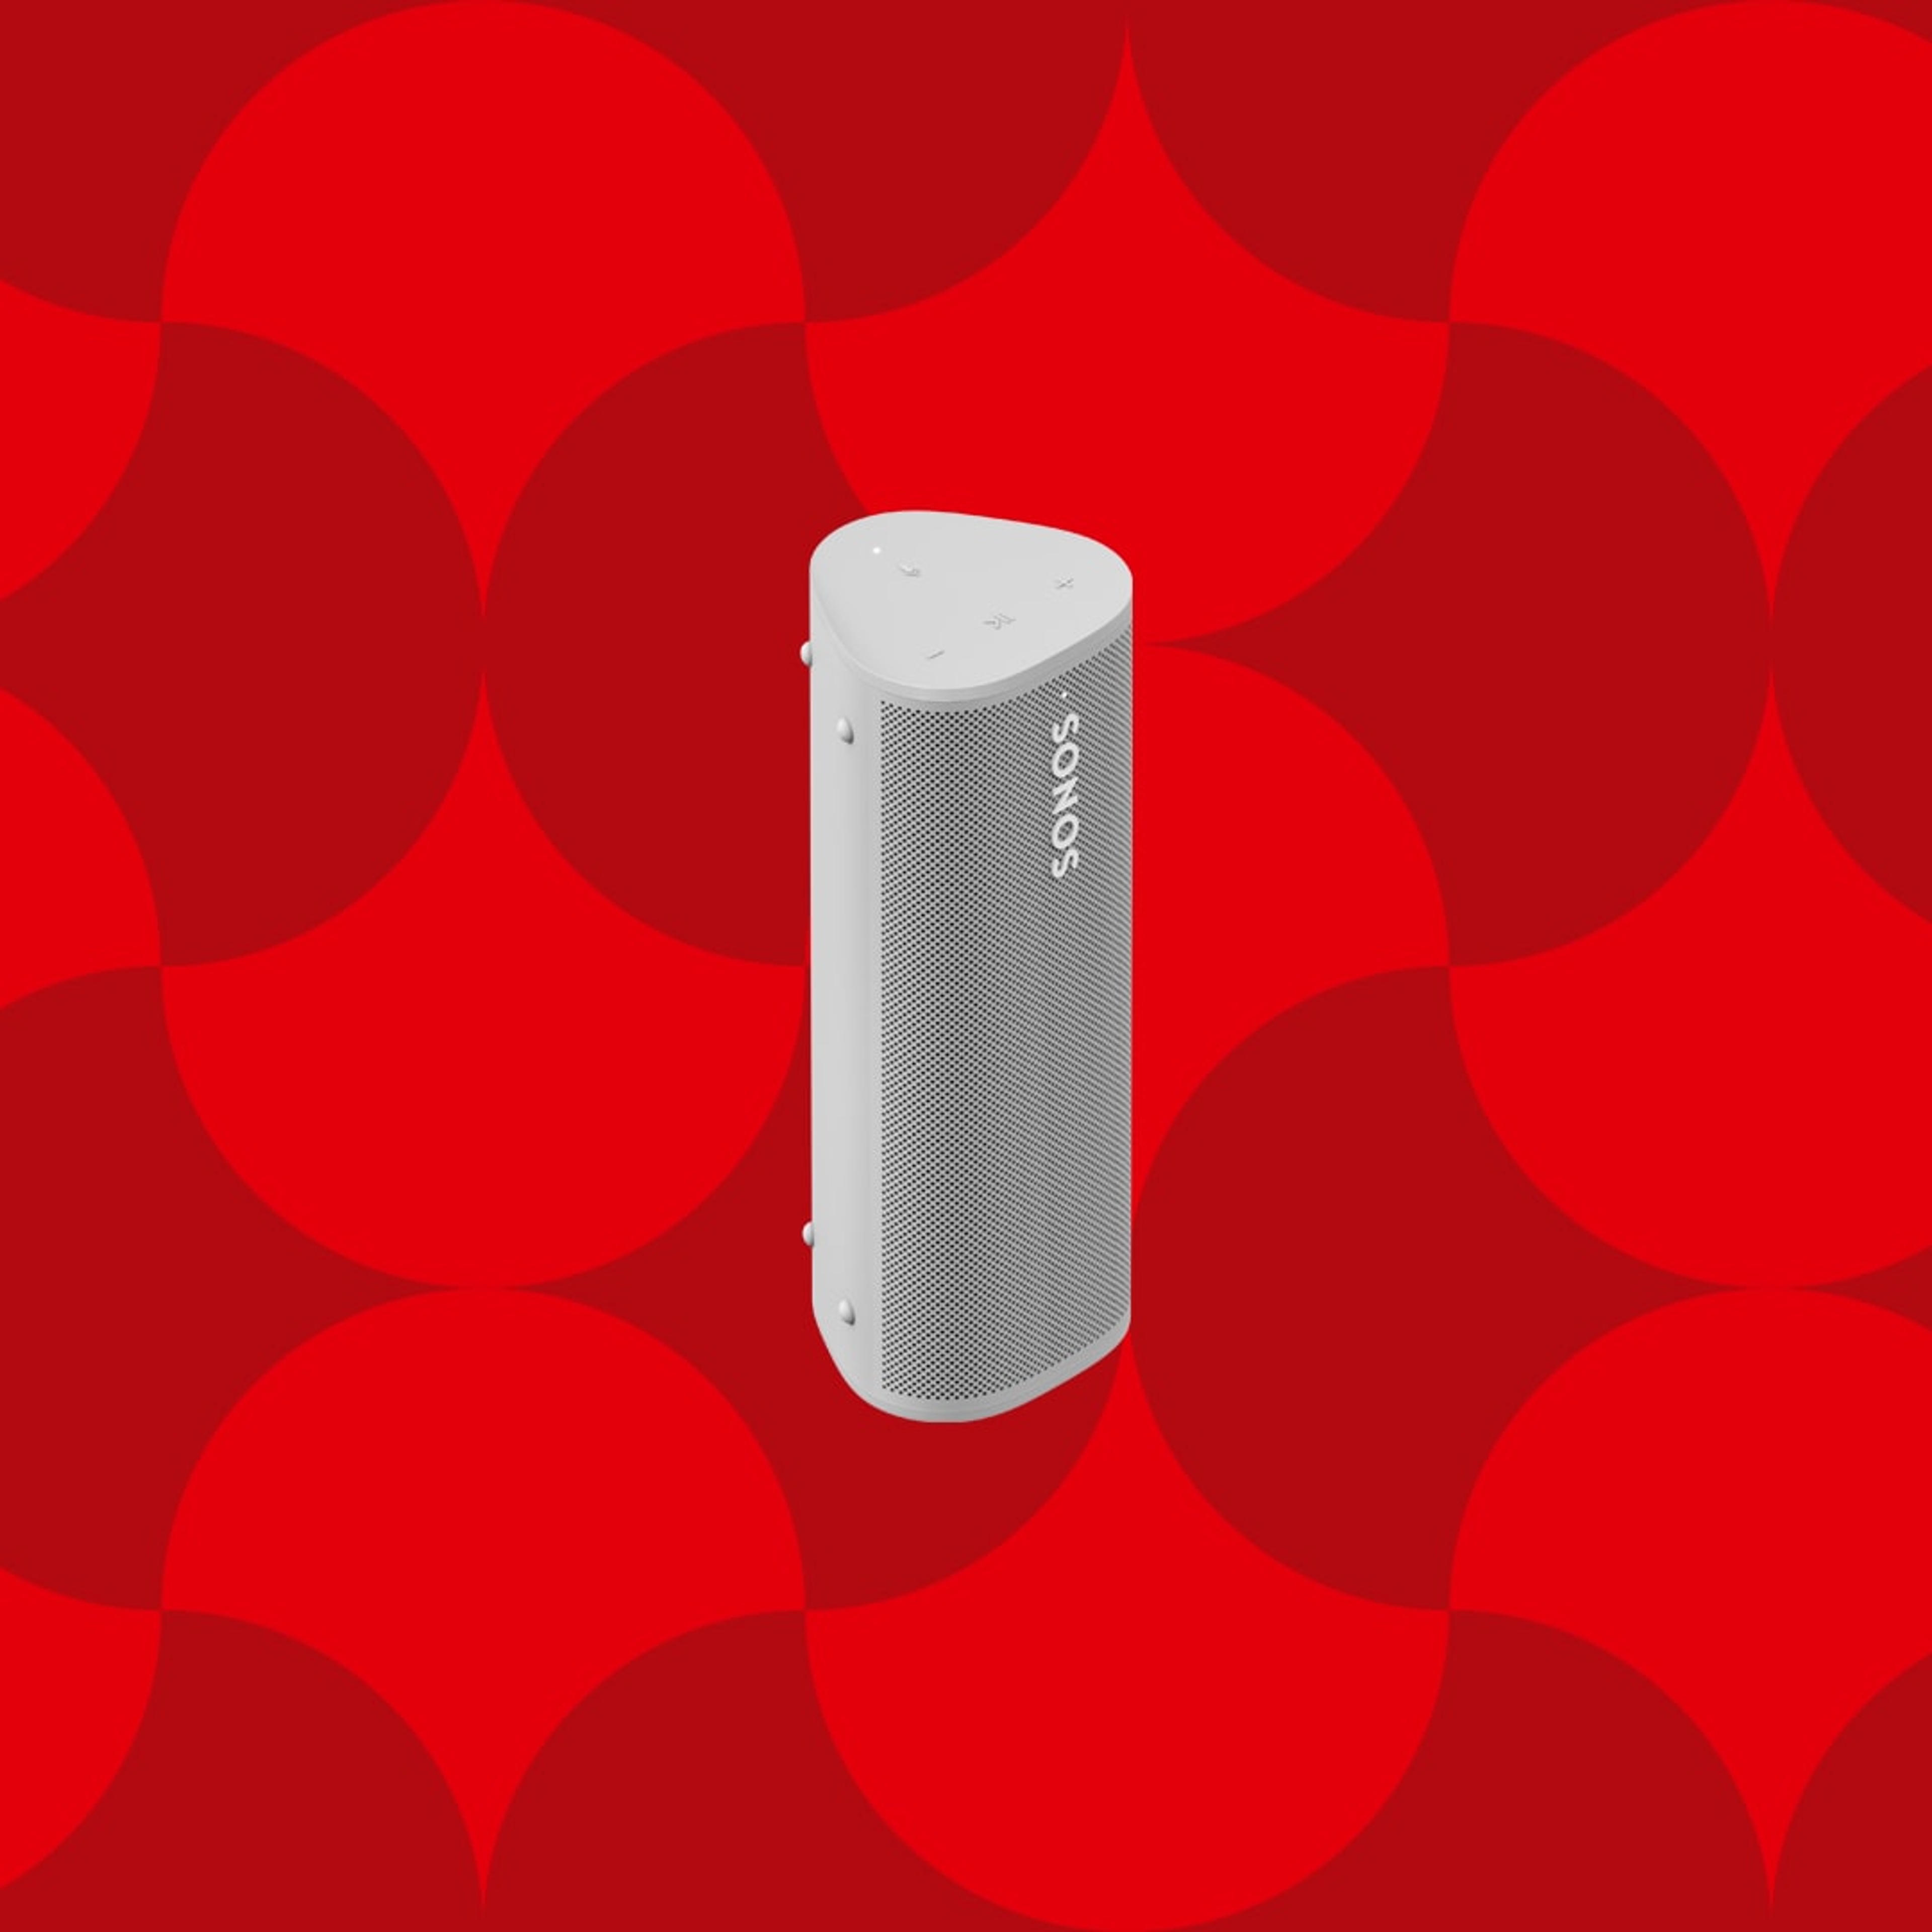 Bilde av en hvit Sonos Roam bærbar høyttaler på en rød grafisk julebakgrunn